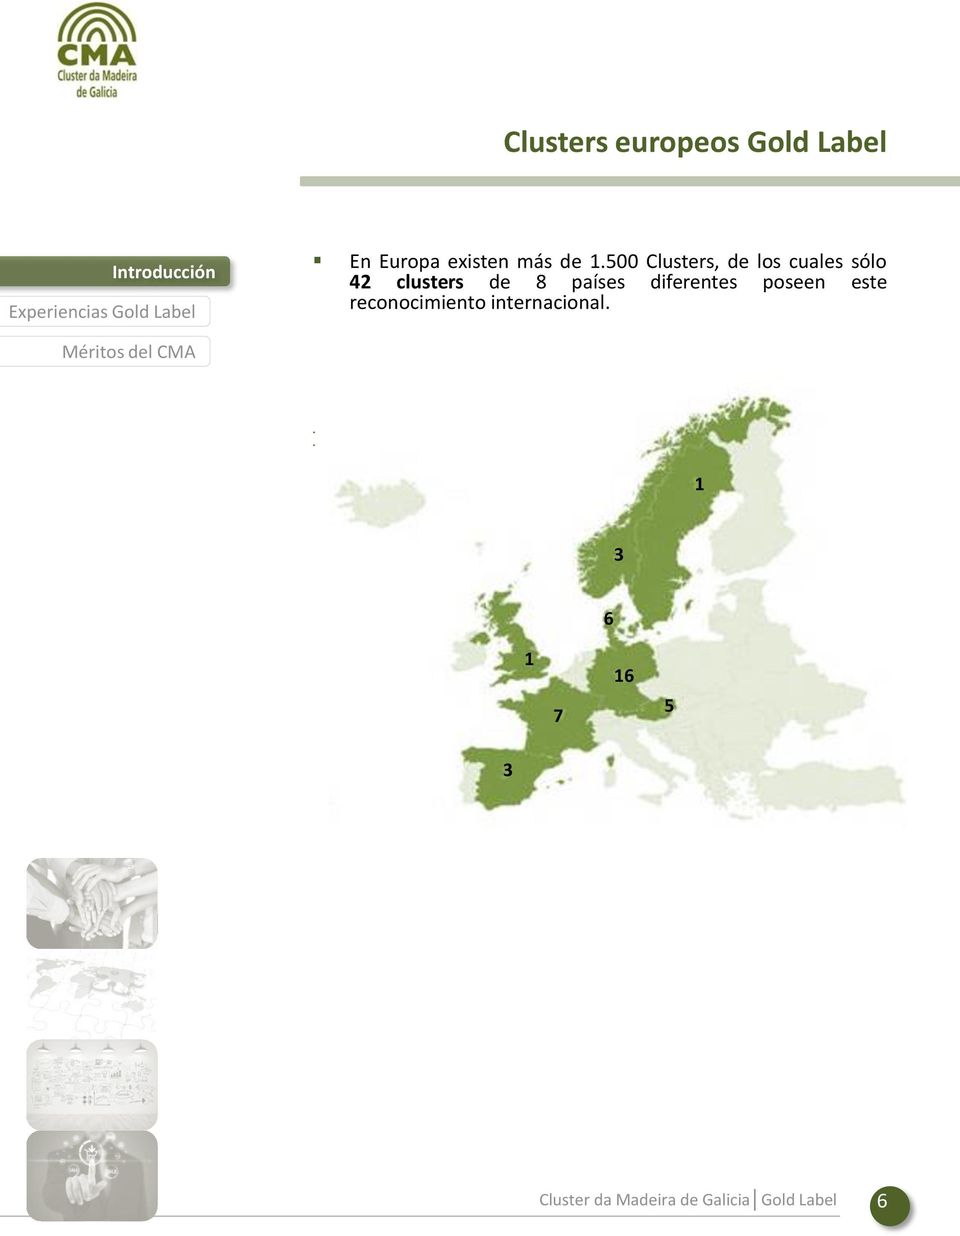 En España existen más de 180 Clusters, de los que sólo 3 están acreditados como Gold Label por la European Secretariat